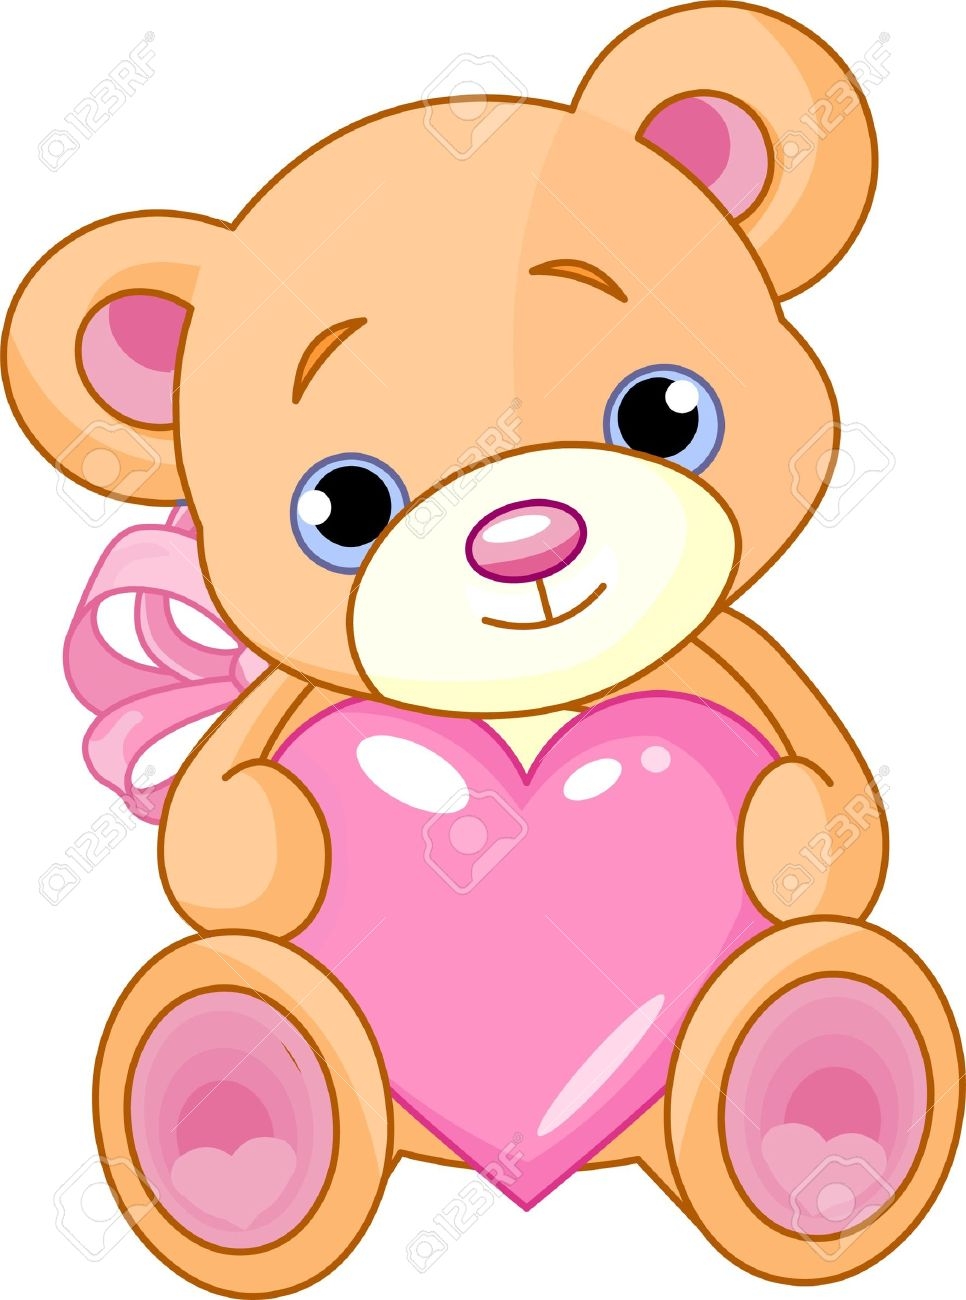 Drawing Cute Teddy Bear Heart Stock Illustration 172531919 | Shutterstock